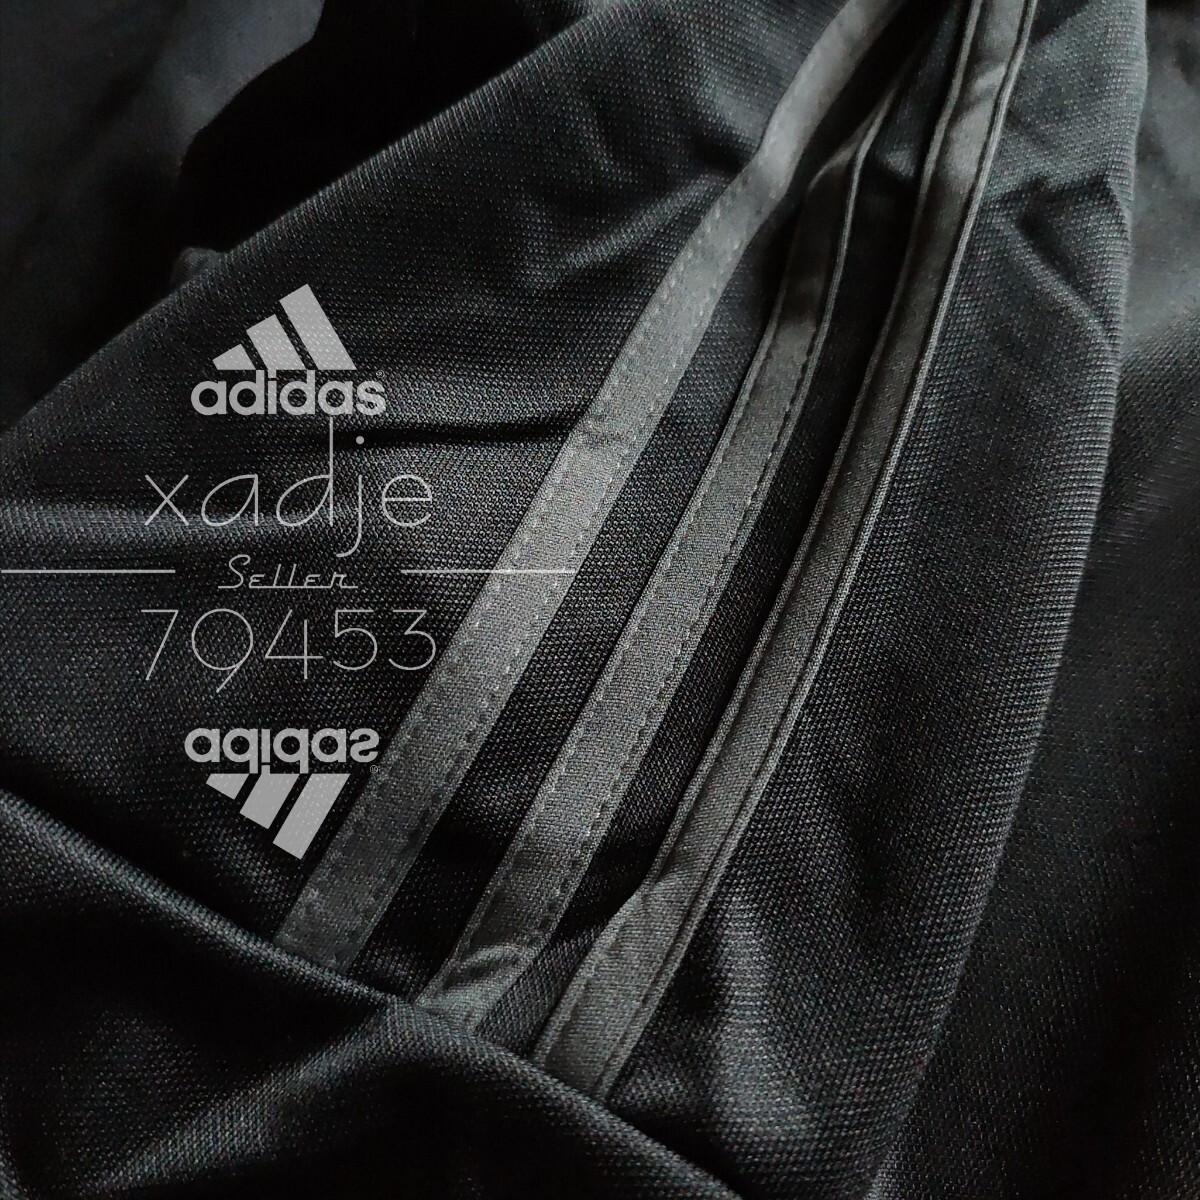 新品 正規品 adidas アディダス 上下セット セットアップ ジャージ 黒 ブラック チャコール 三本ライン 裾ファスナー付き 薄手 M